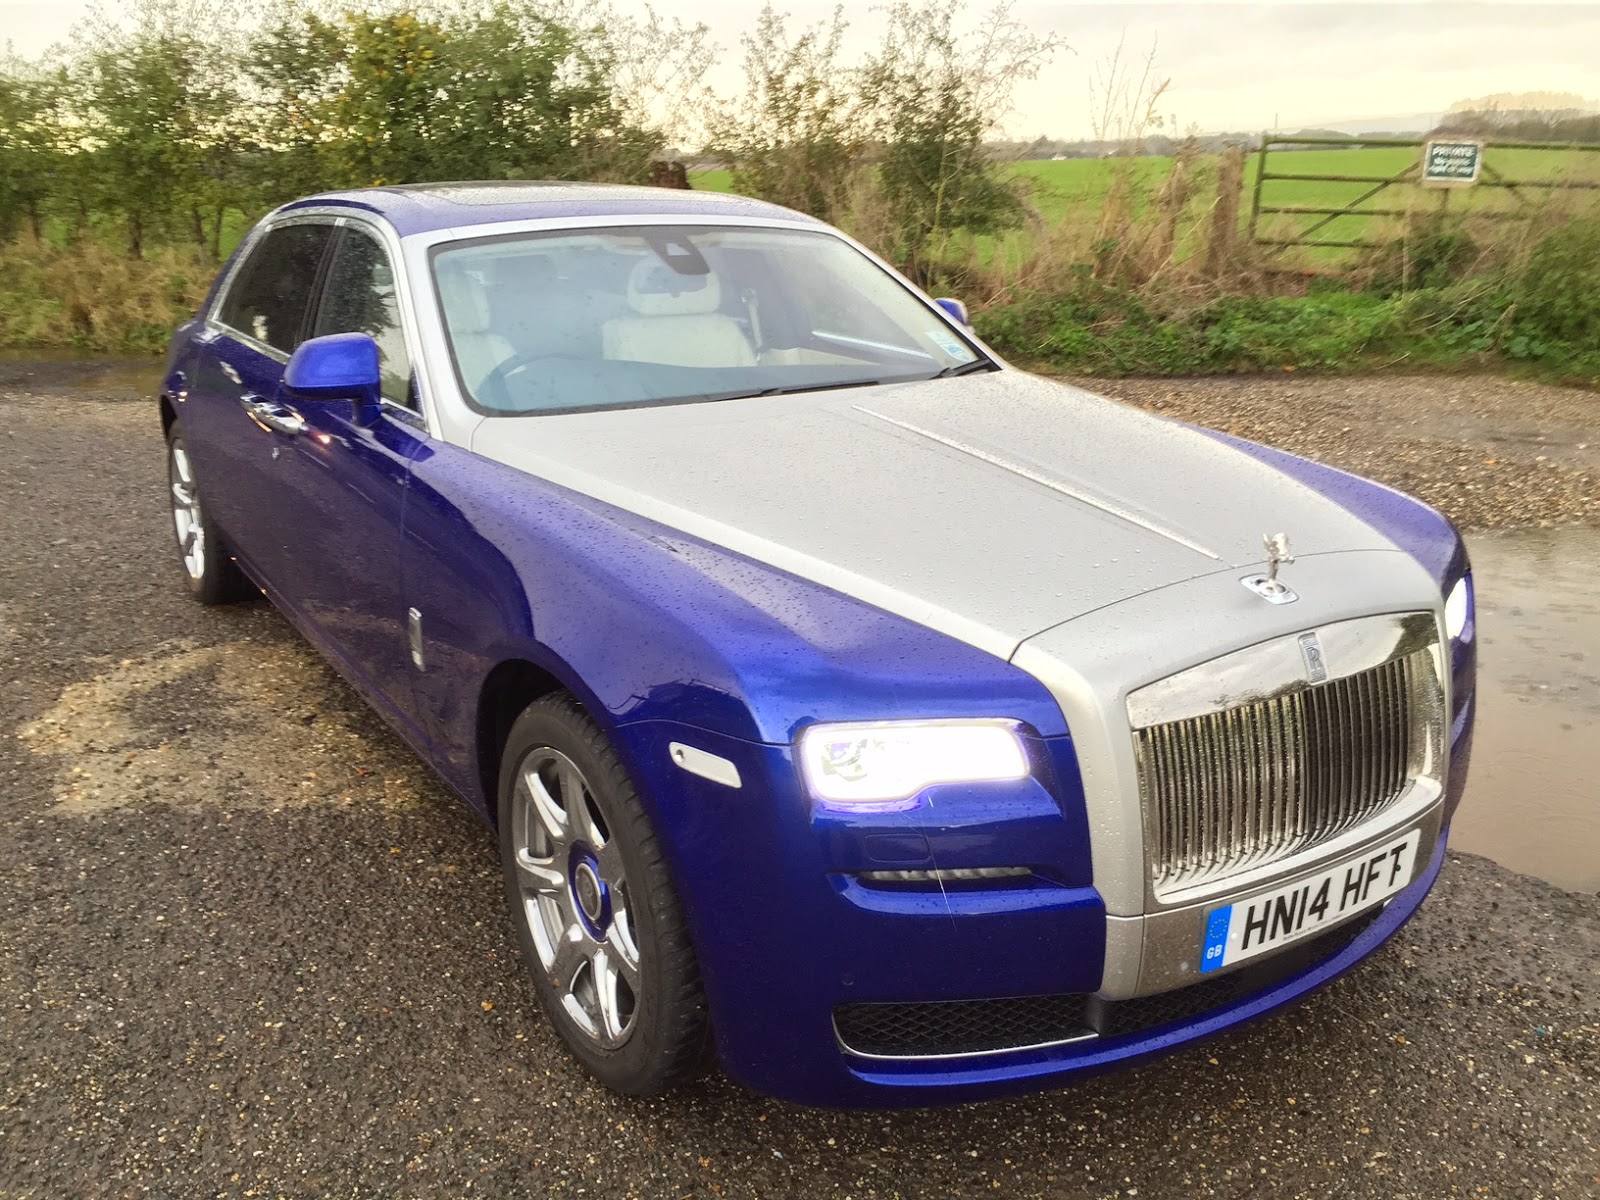 2014 Rolls Royce Ghost Series II Extended Wheelbase